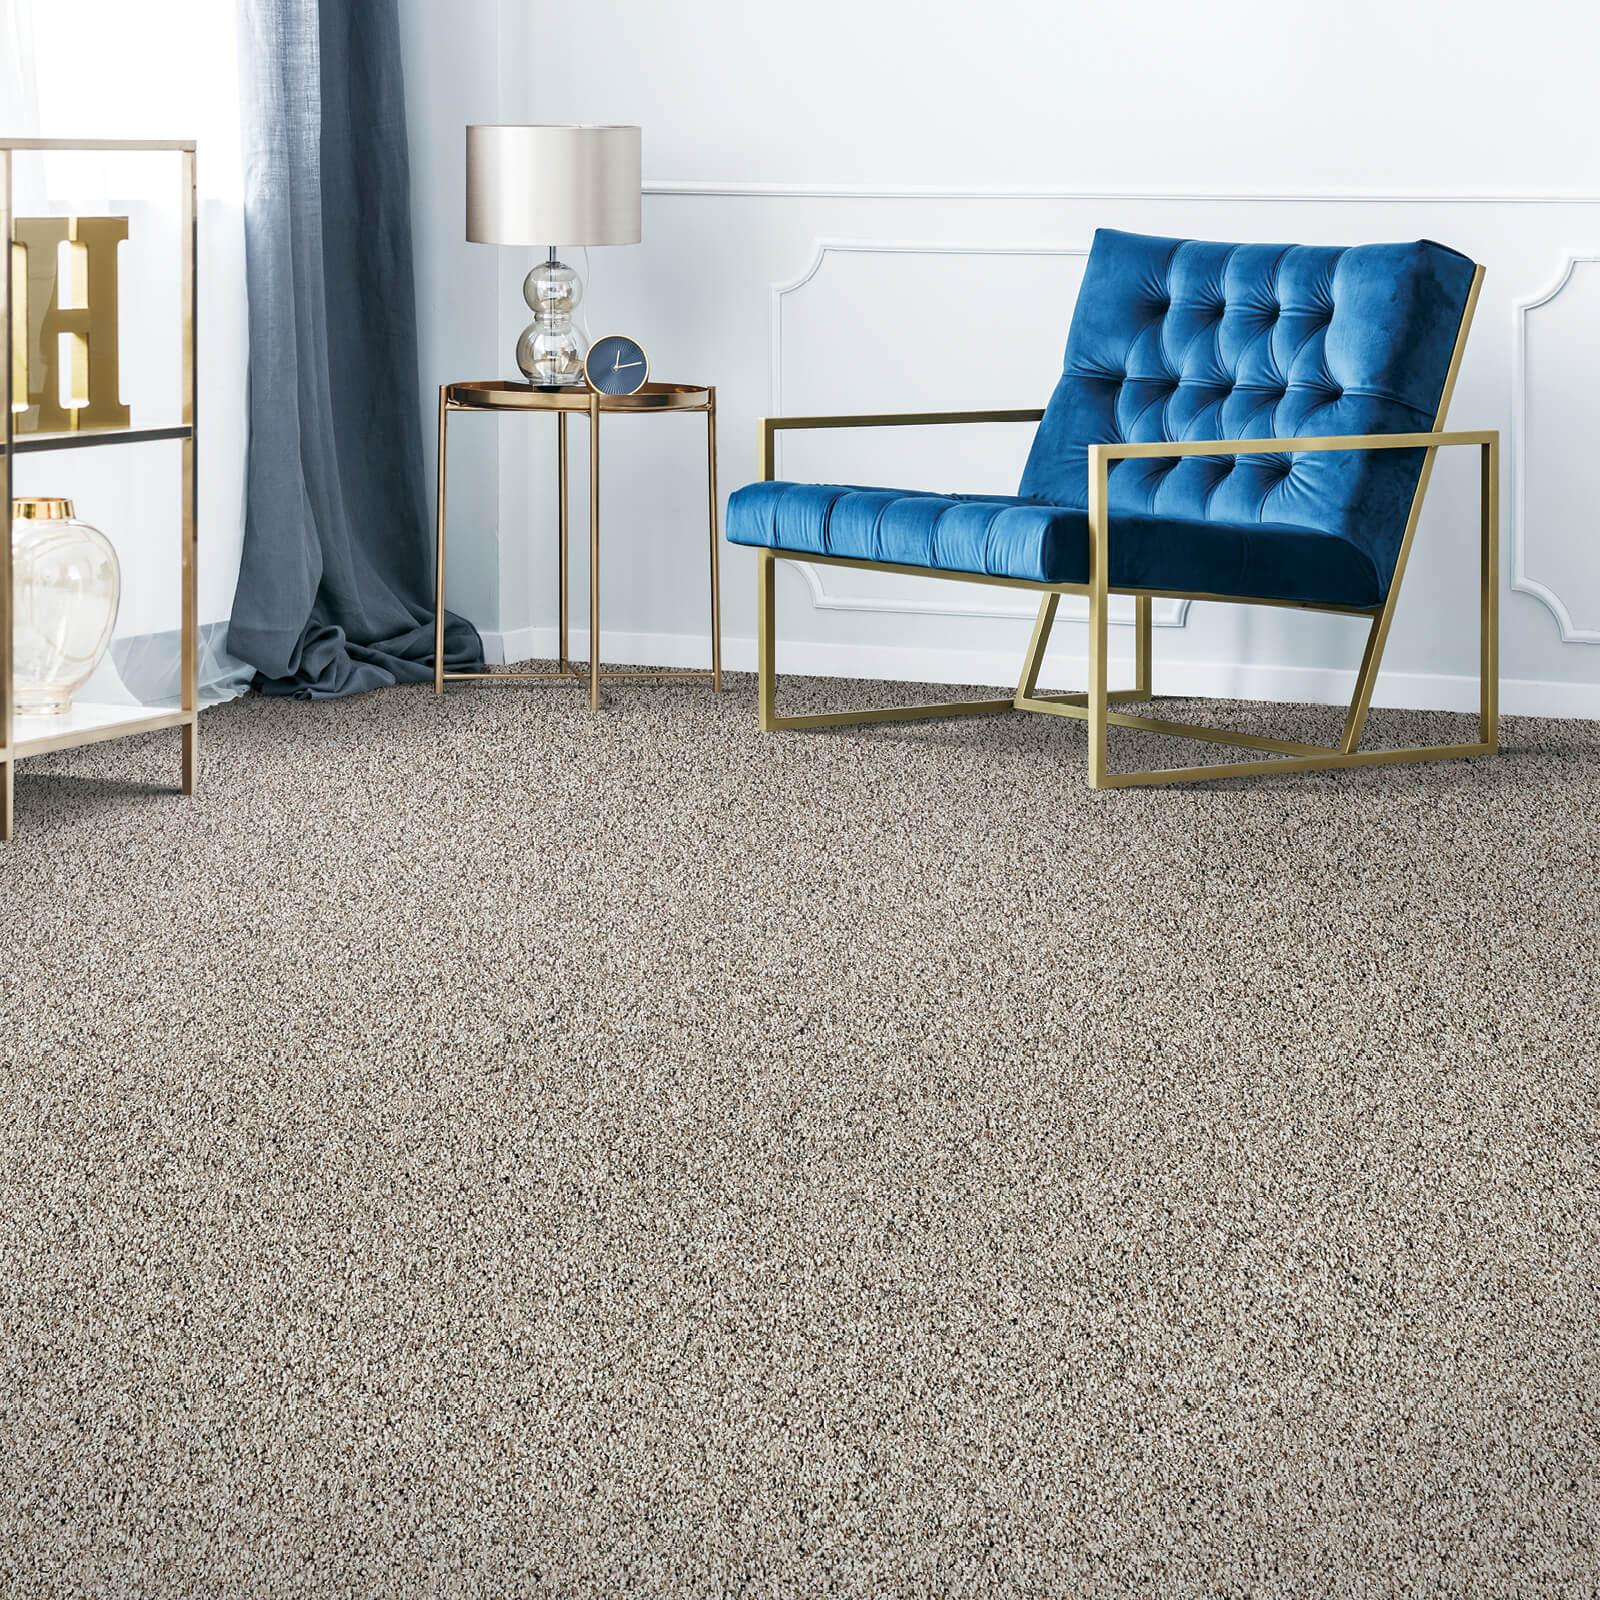 Carpet flooring | Carpet And Floors For Less